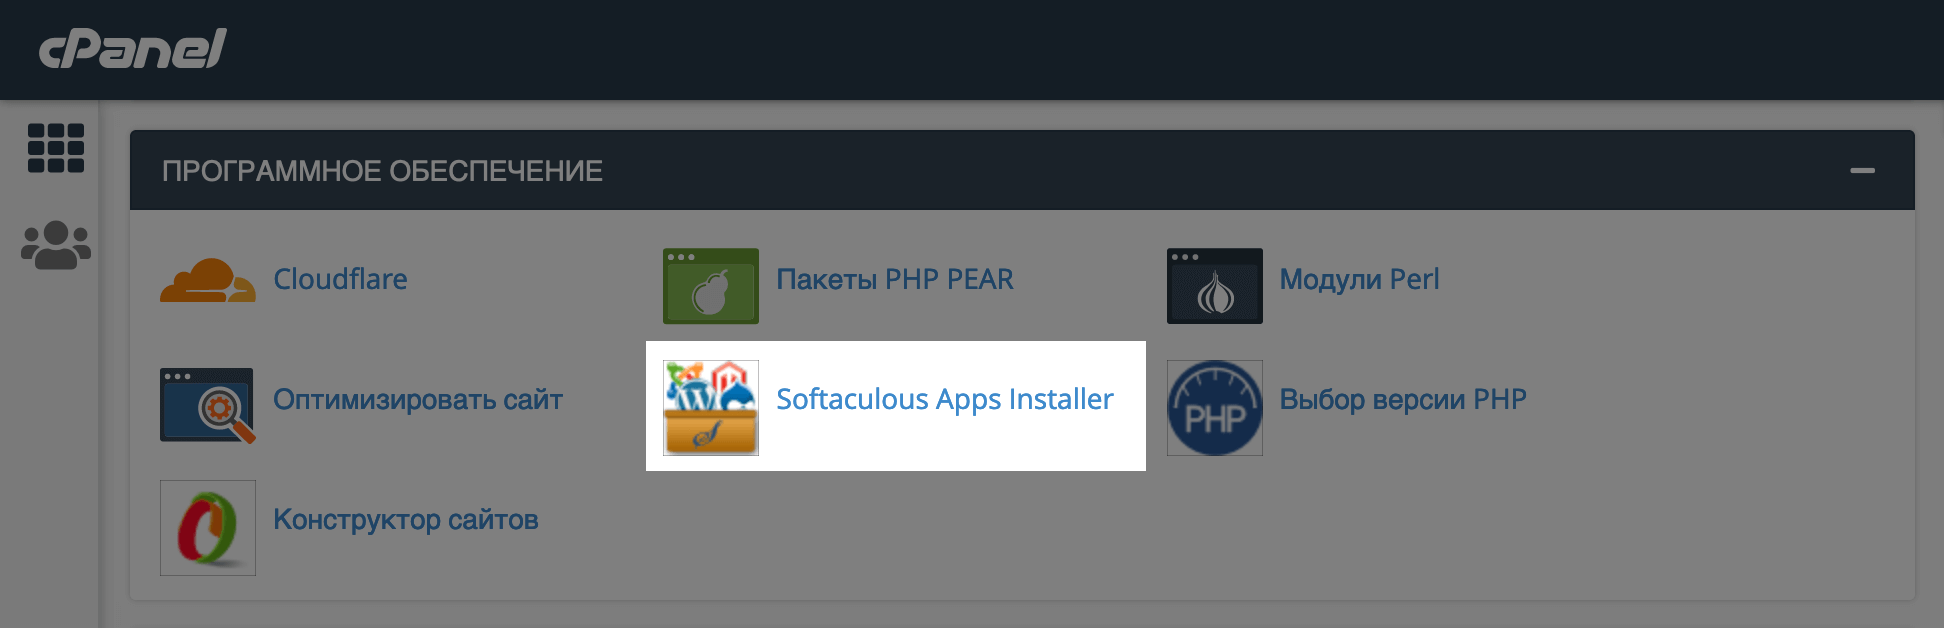 Раздел «Softaculous Apps Installer» в блоке «Программное обеспечение» на главной странице cPanel